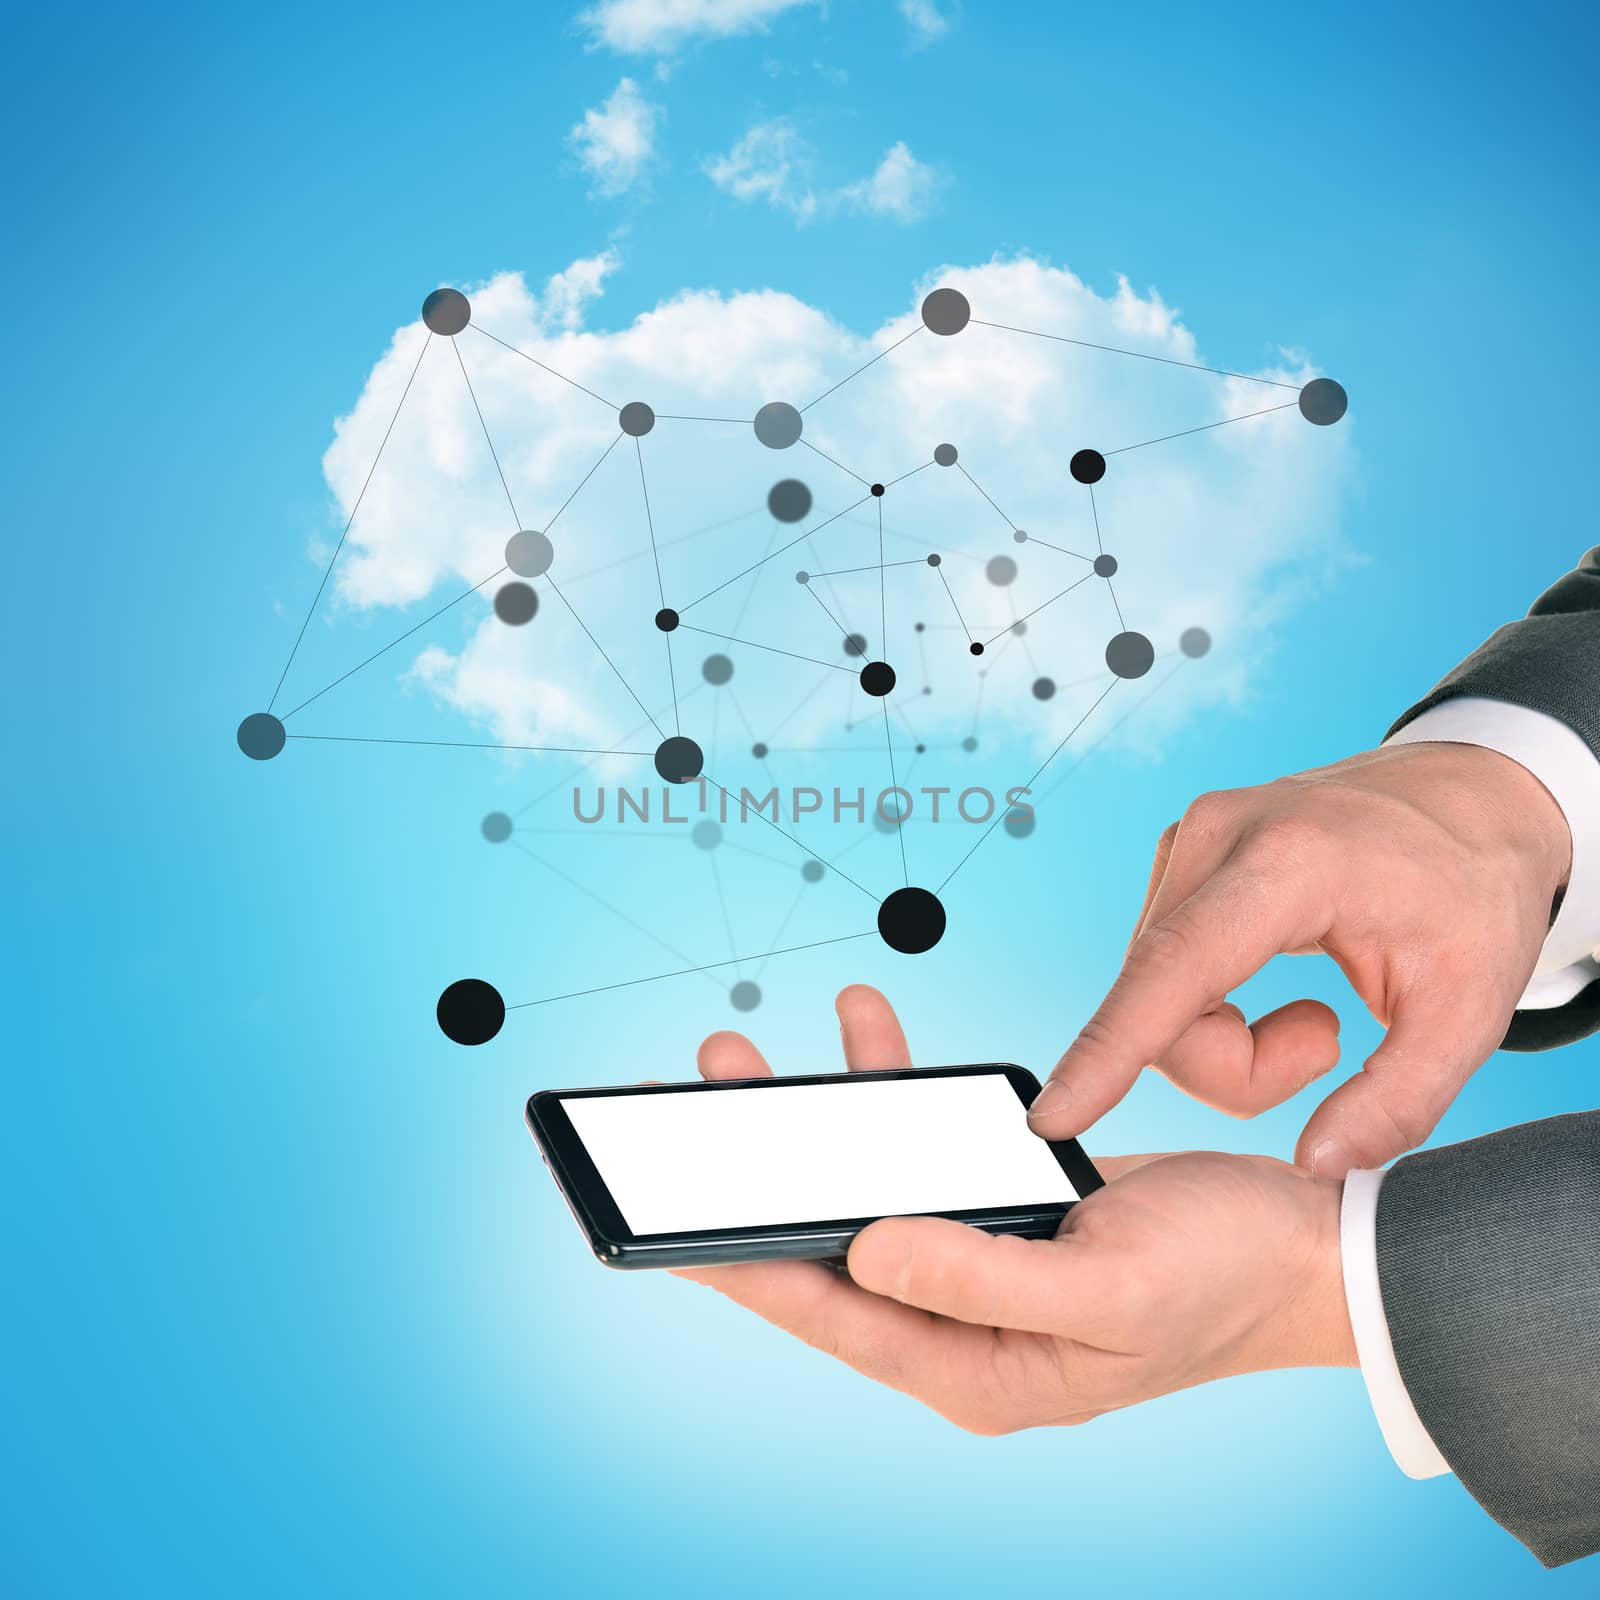 Businessman hands holding smartphone on blue sky background